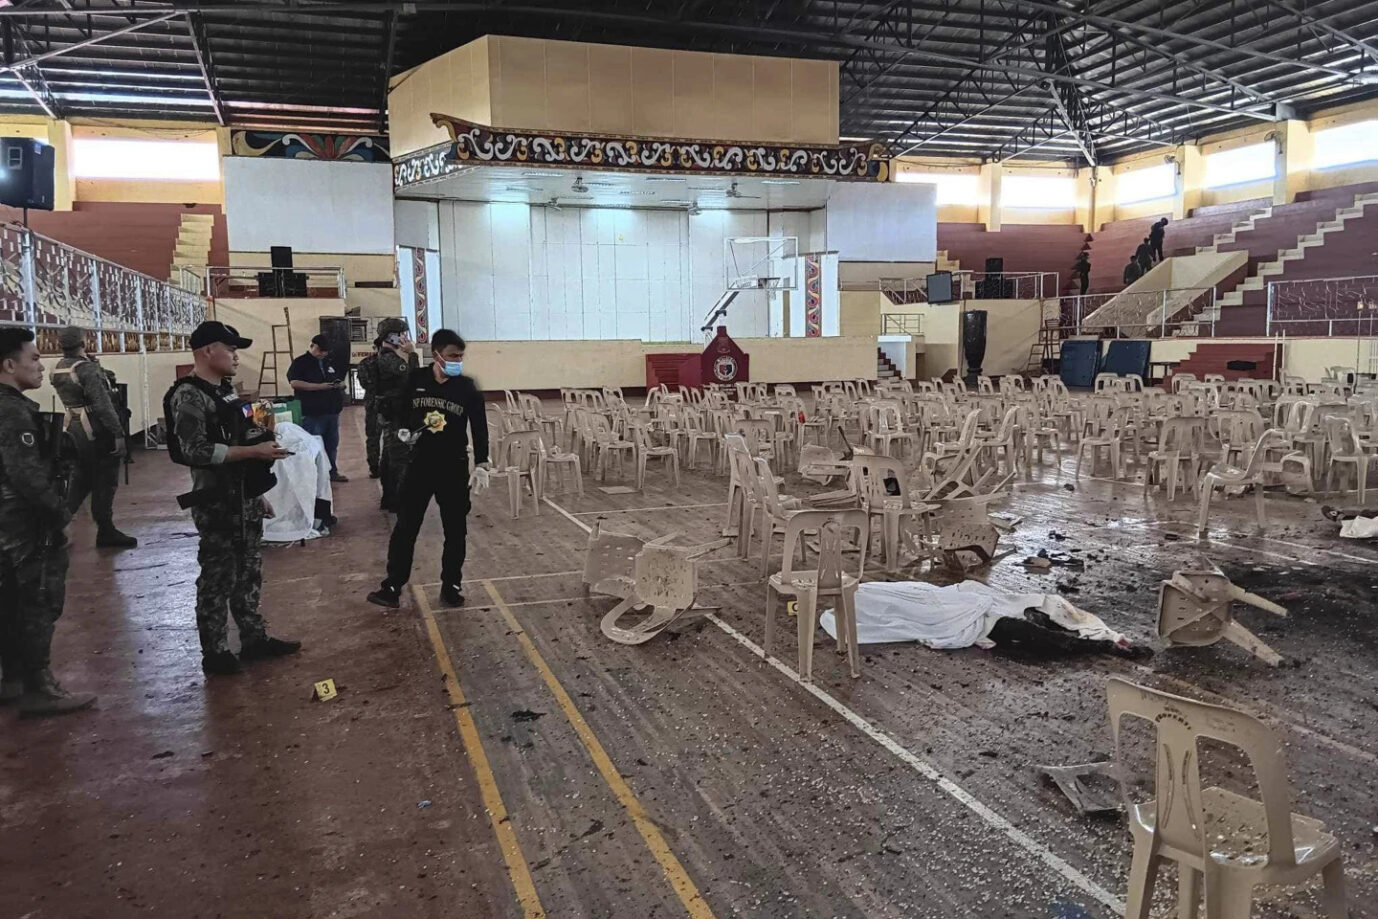 Polizisten besichtigen den Tatort – der IS beging einen Anschlag in dieser Turnhalle in den Philippinen